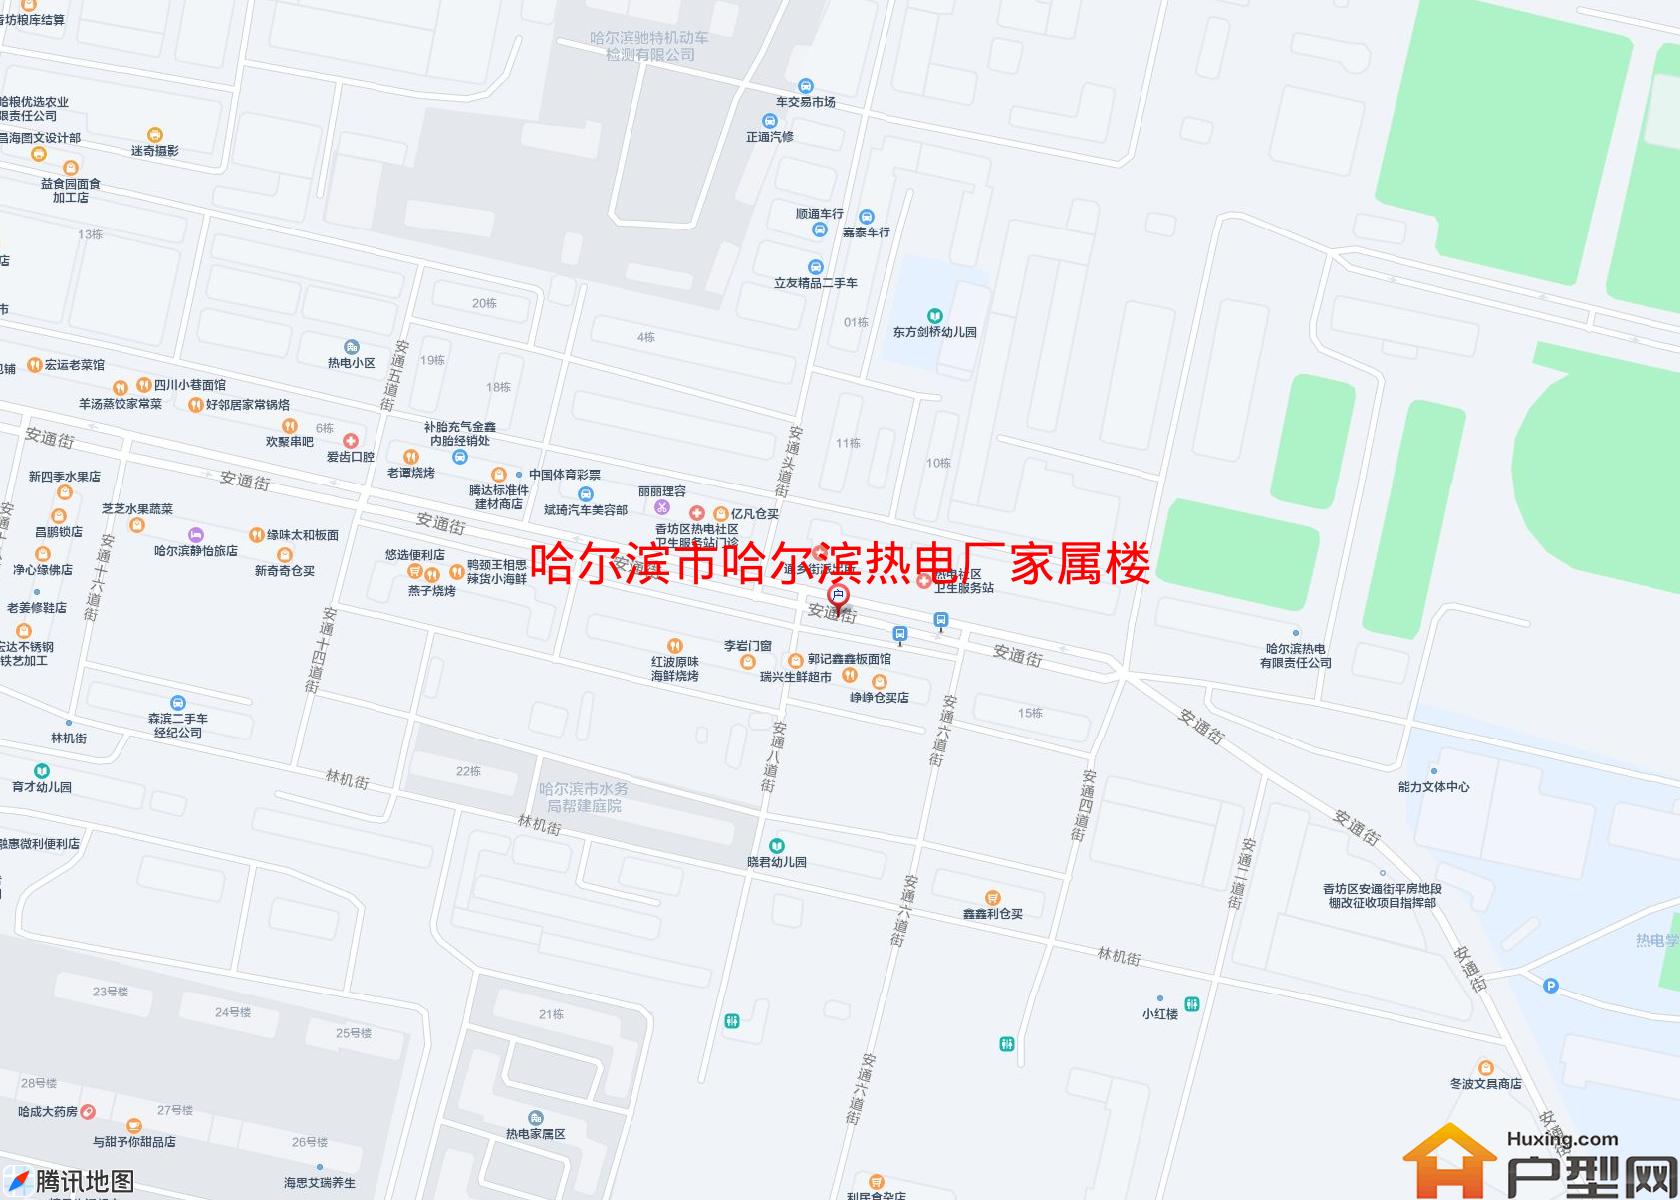 哈尔滨热电厂家属楼小区 - 户型网